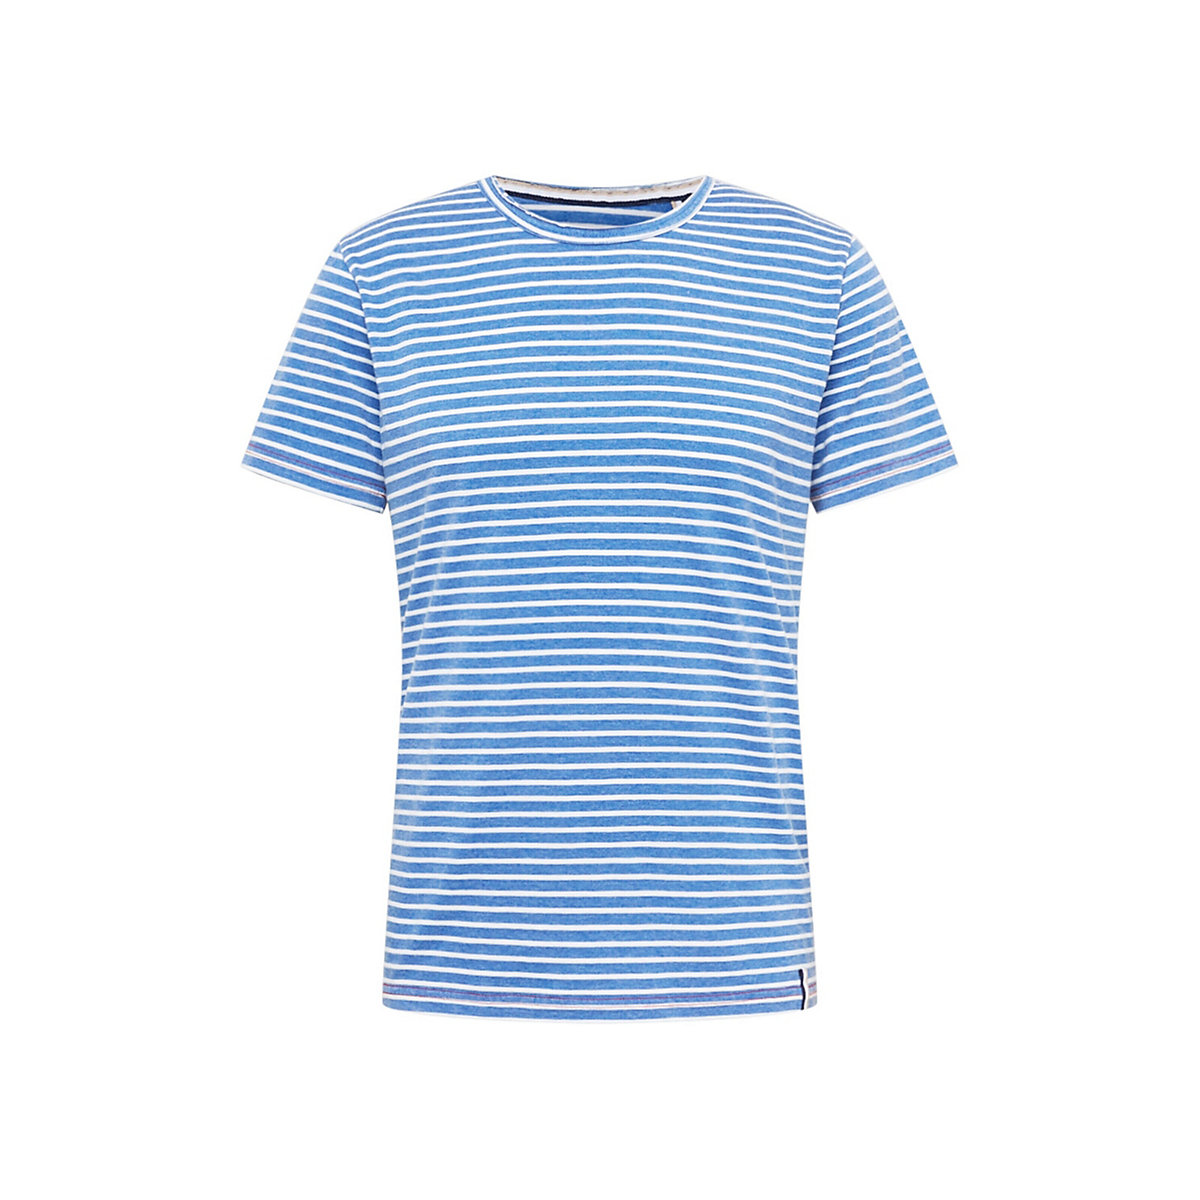 KEY LARGO Shirt Danilo blau/weiß